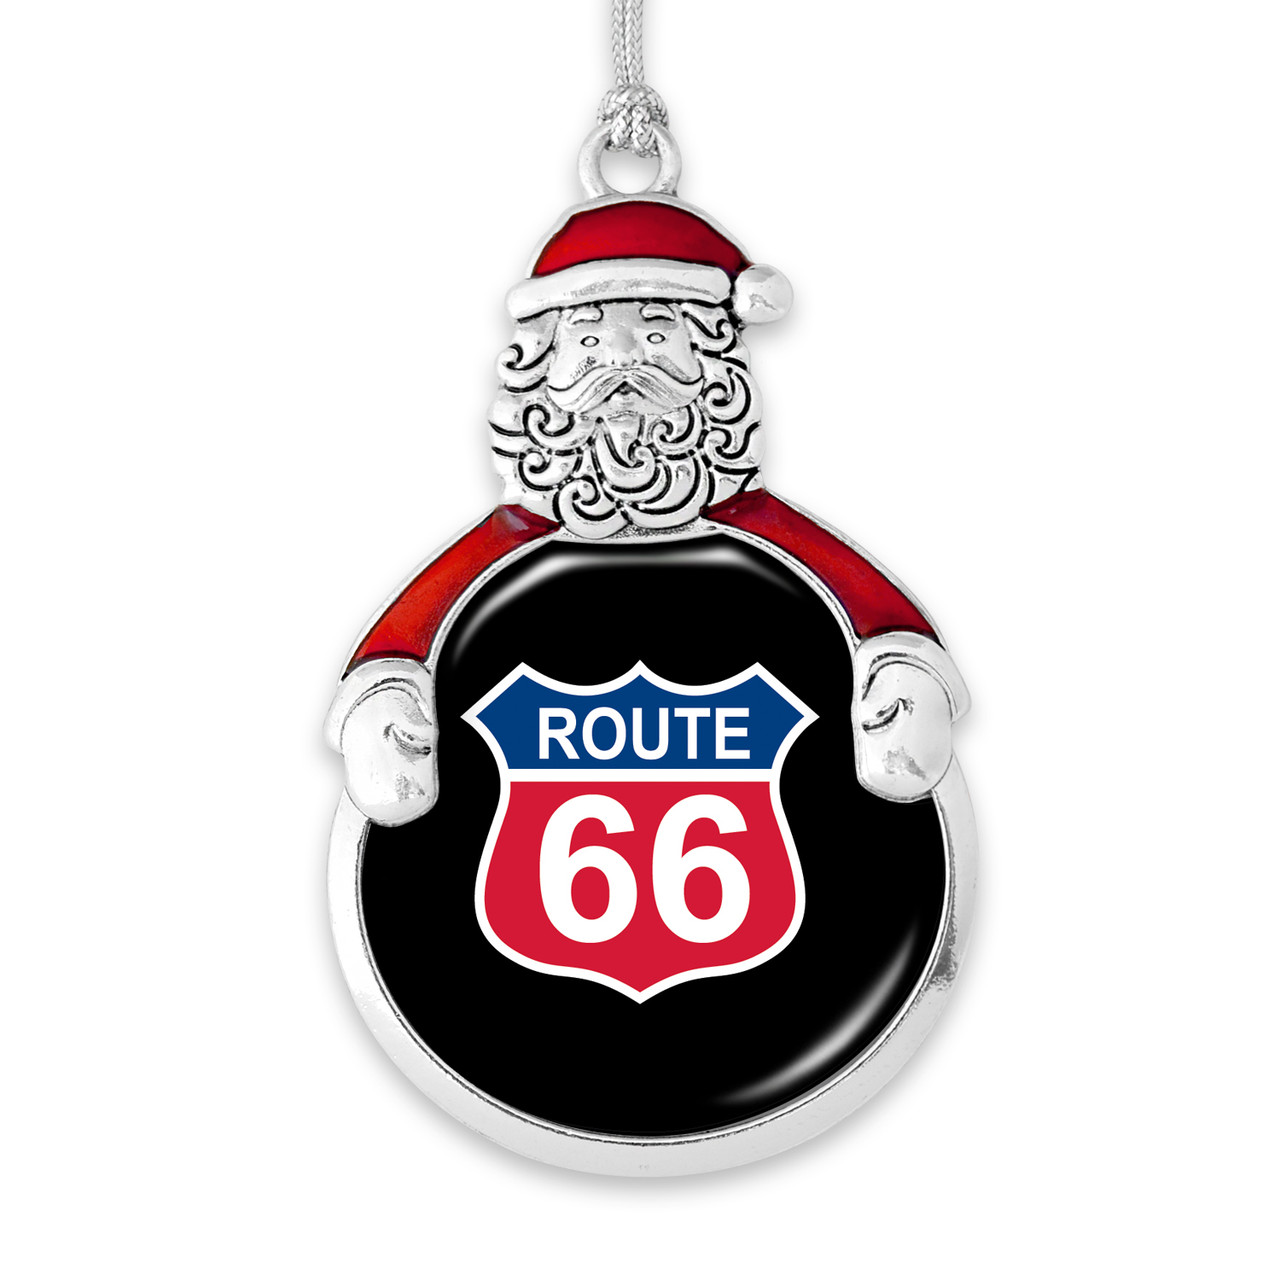 Route 66 Santa Claus Ornament